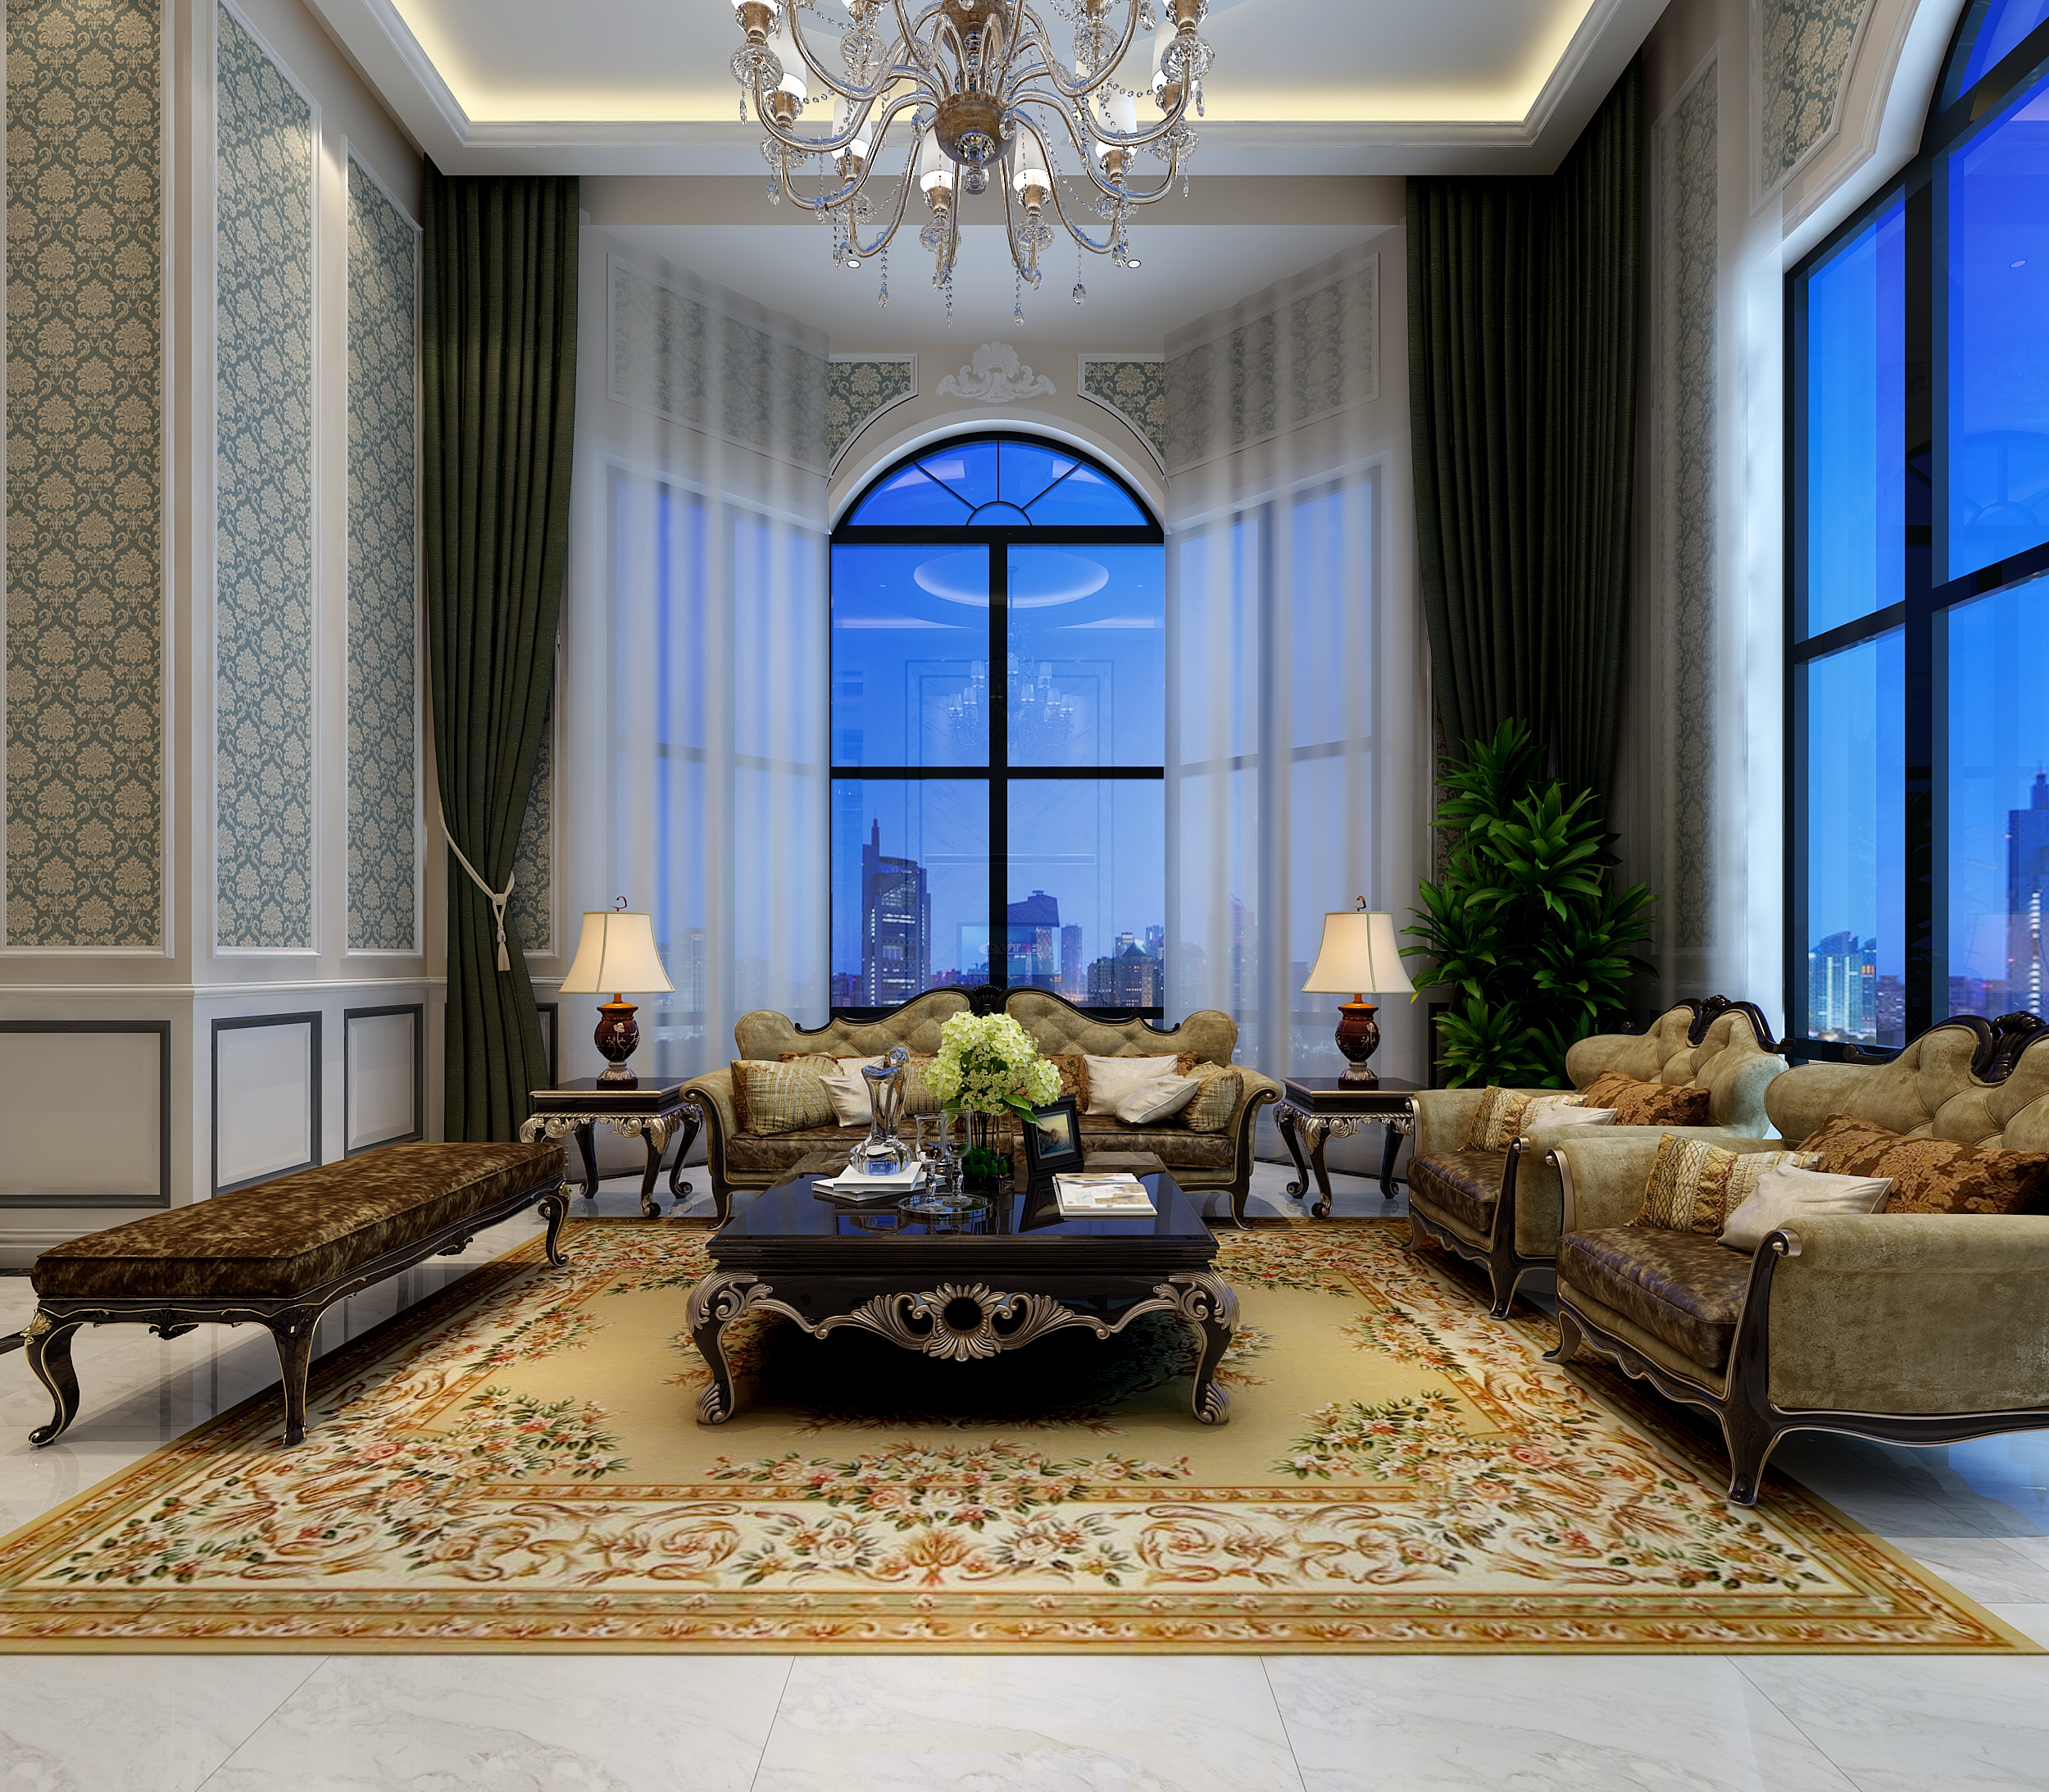 简约 欧式 混搭 别墅 旧房改造 客厅图片来自北京居然元洲装饰在创新的设计思想及其尊贵的姿容的分享